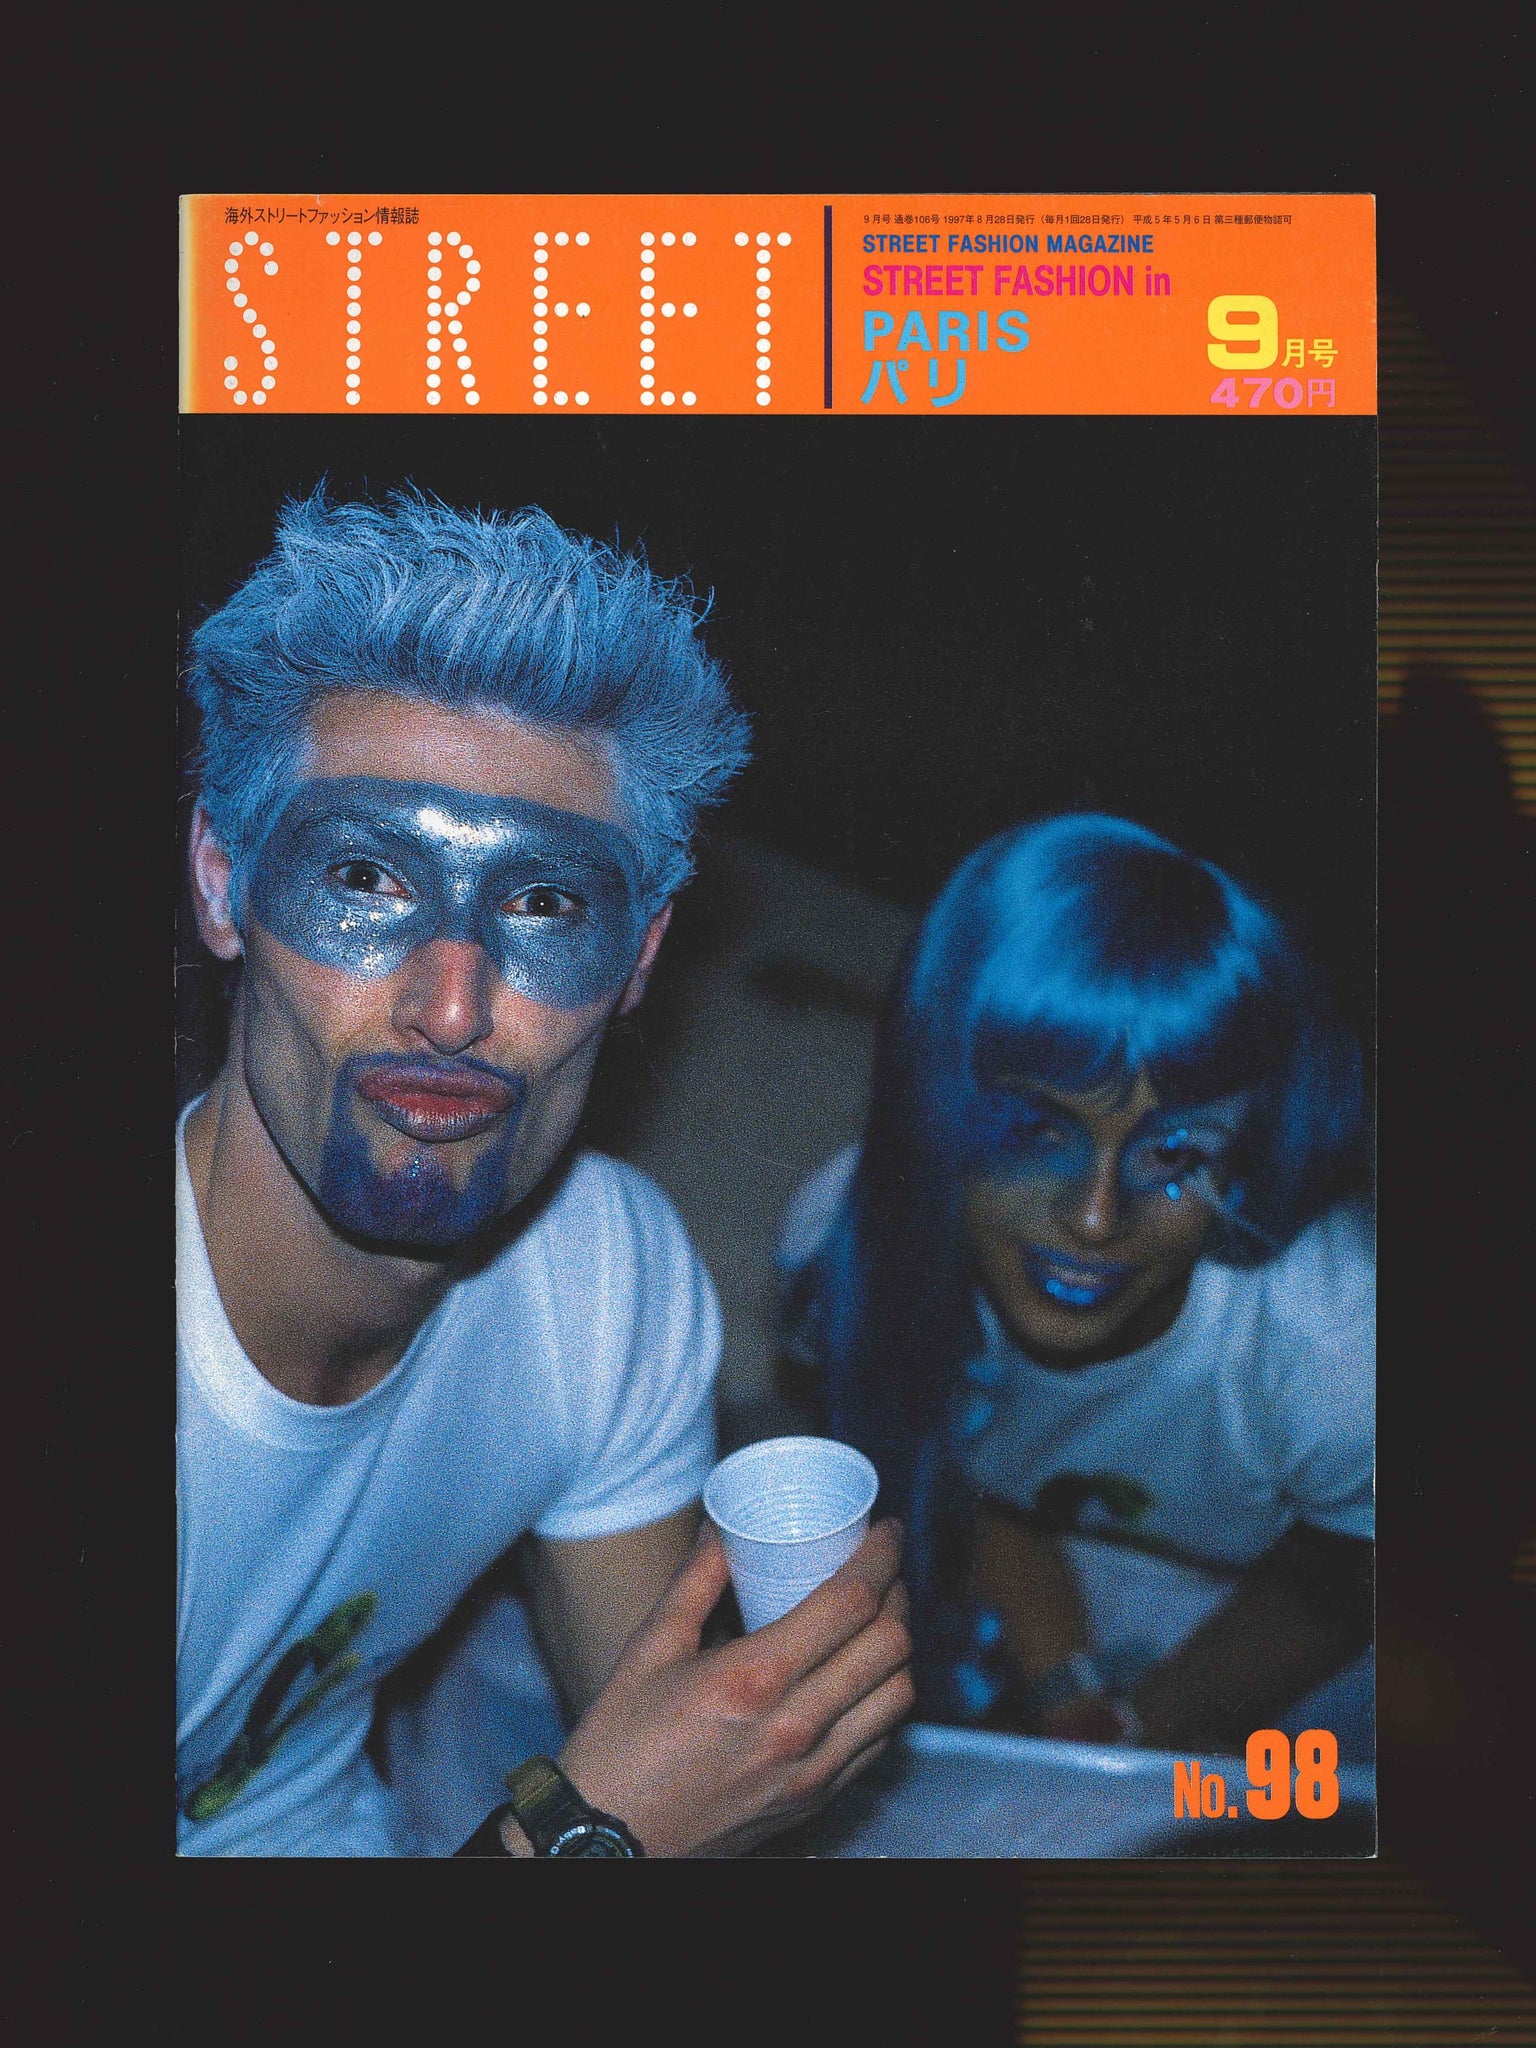 STREET magazine no. 98 / september 1997 / street fashion in paris / Shoichi Aoki